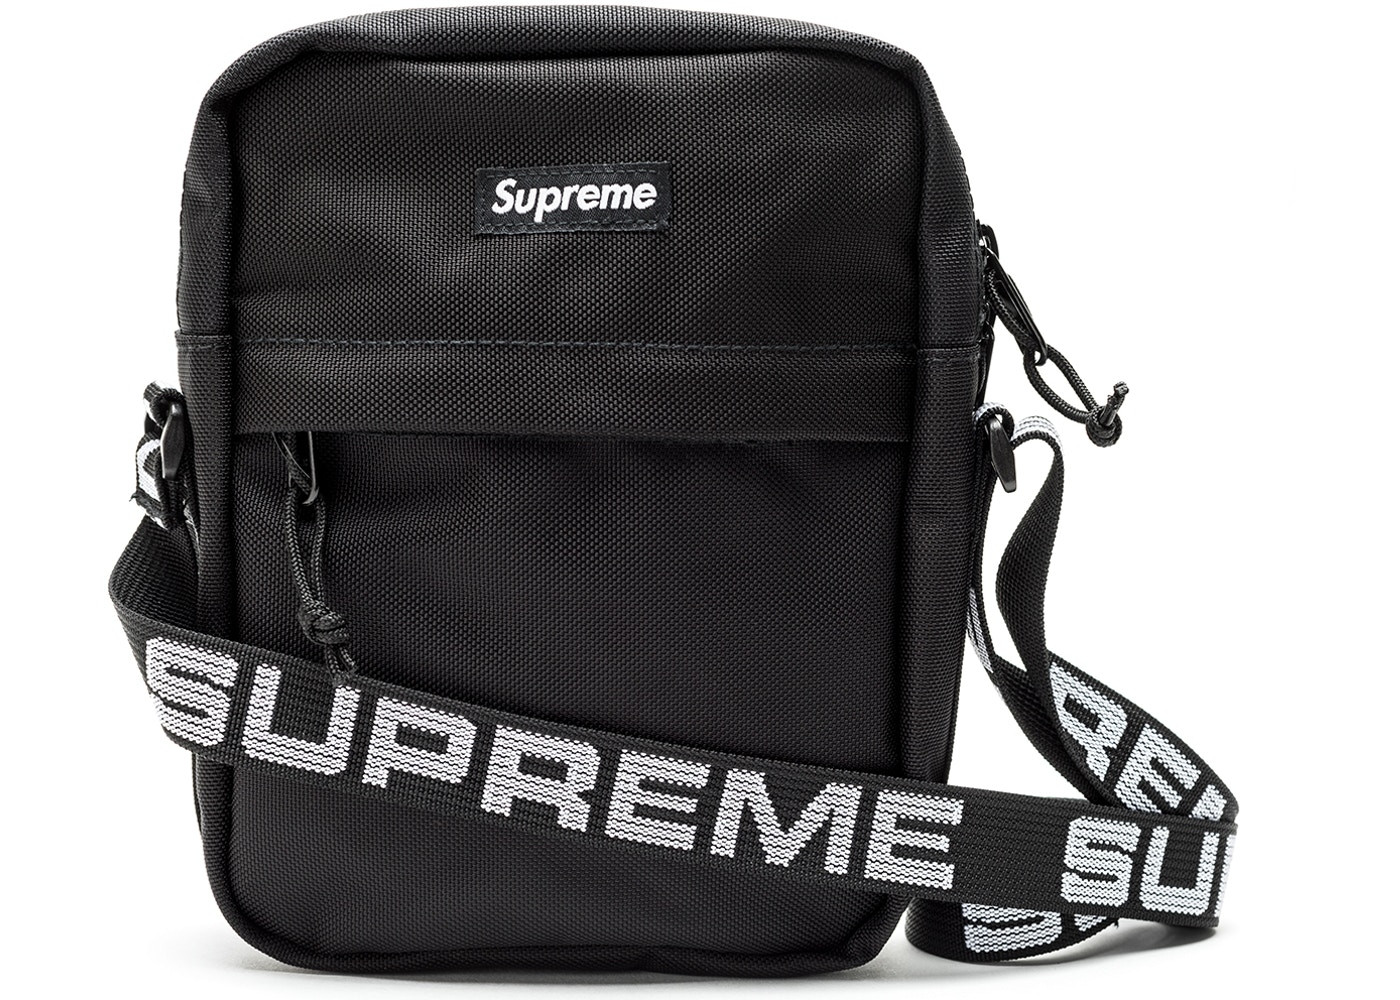 Supreme Fw18 Bag | Supreme HypeBeast Product